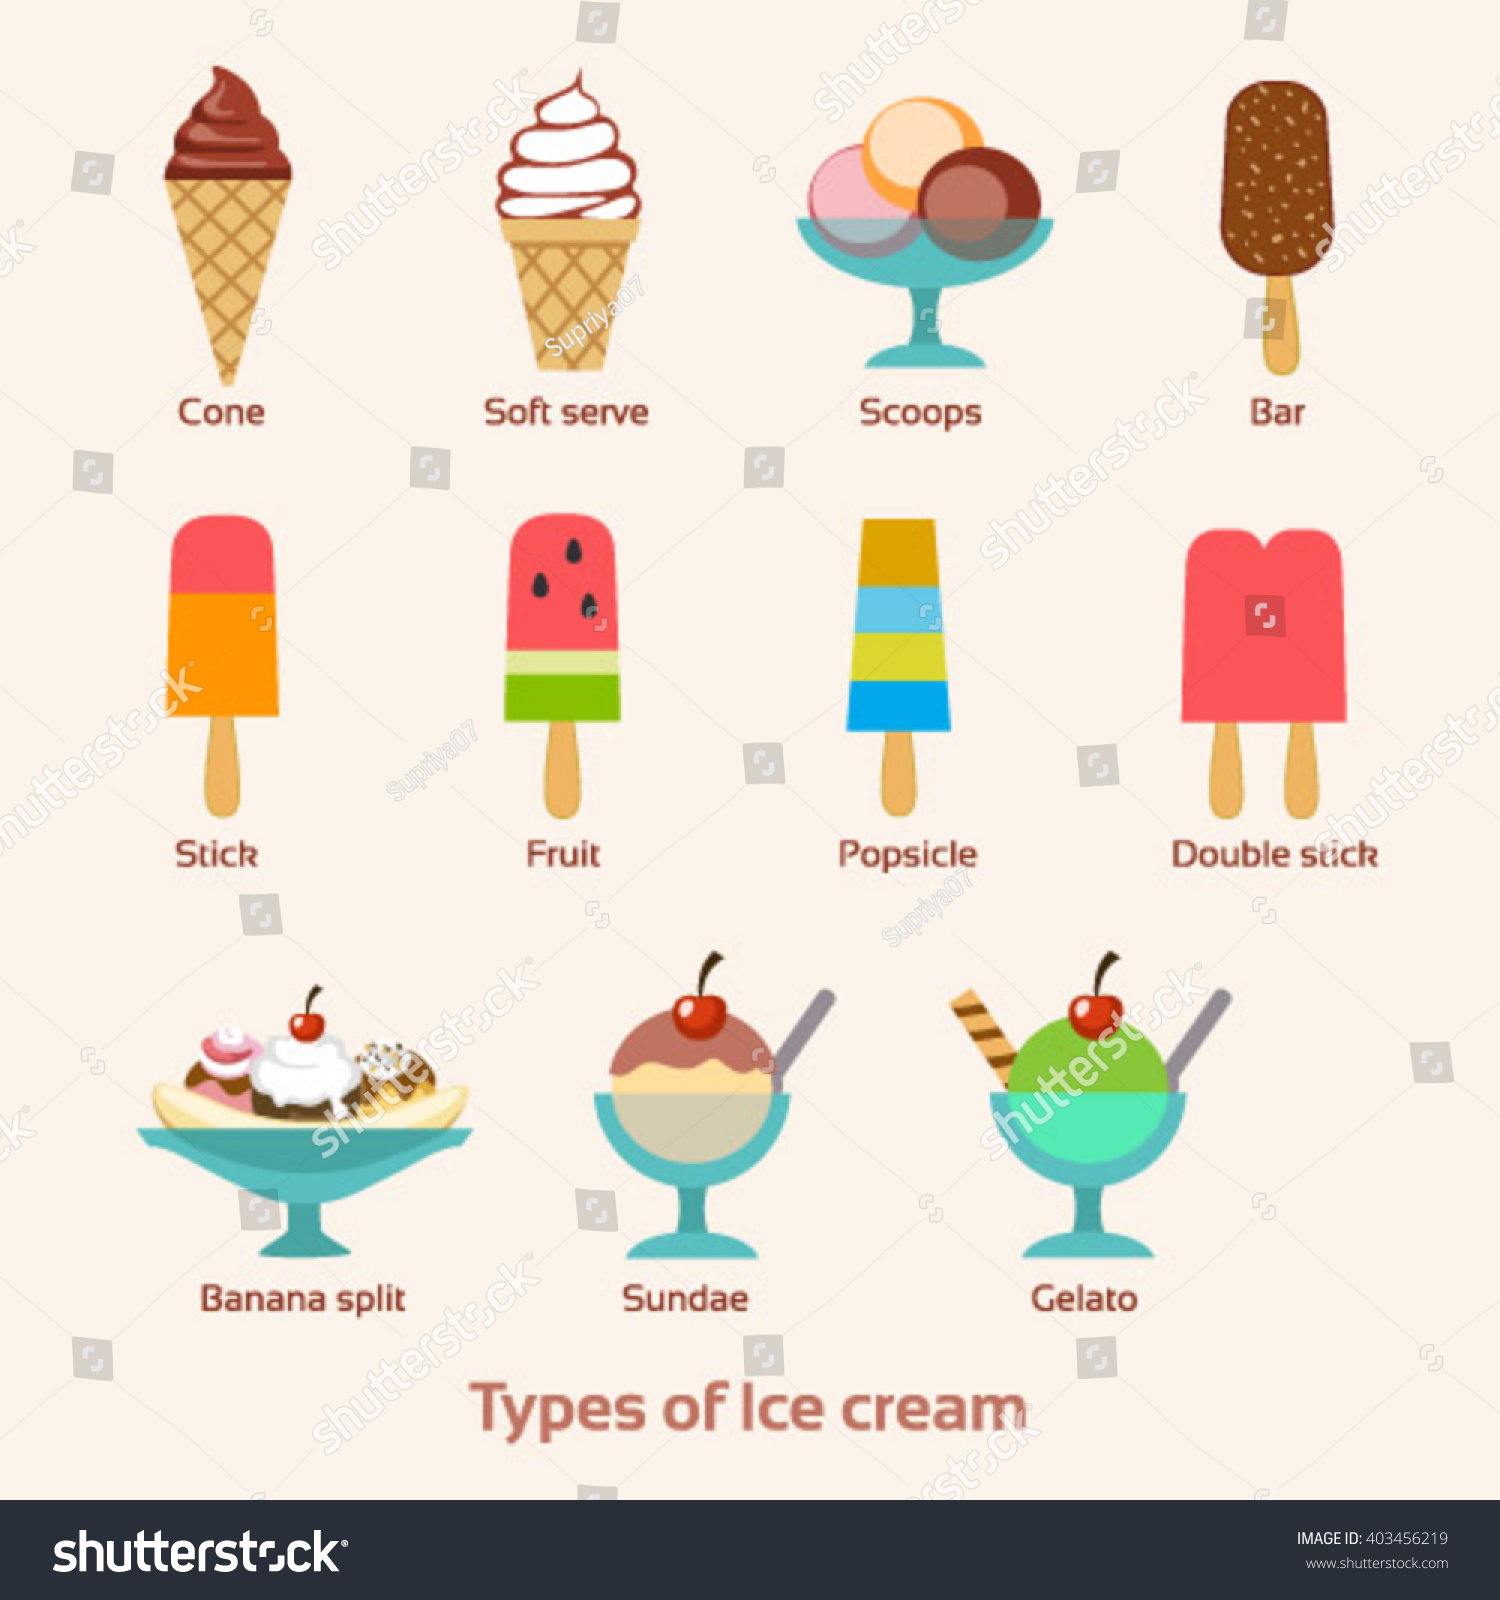 Resultado de imagen de ice cream types